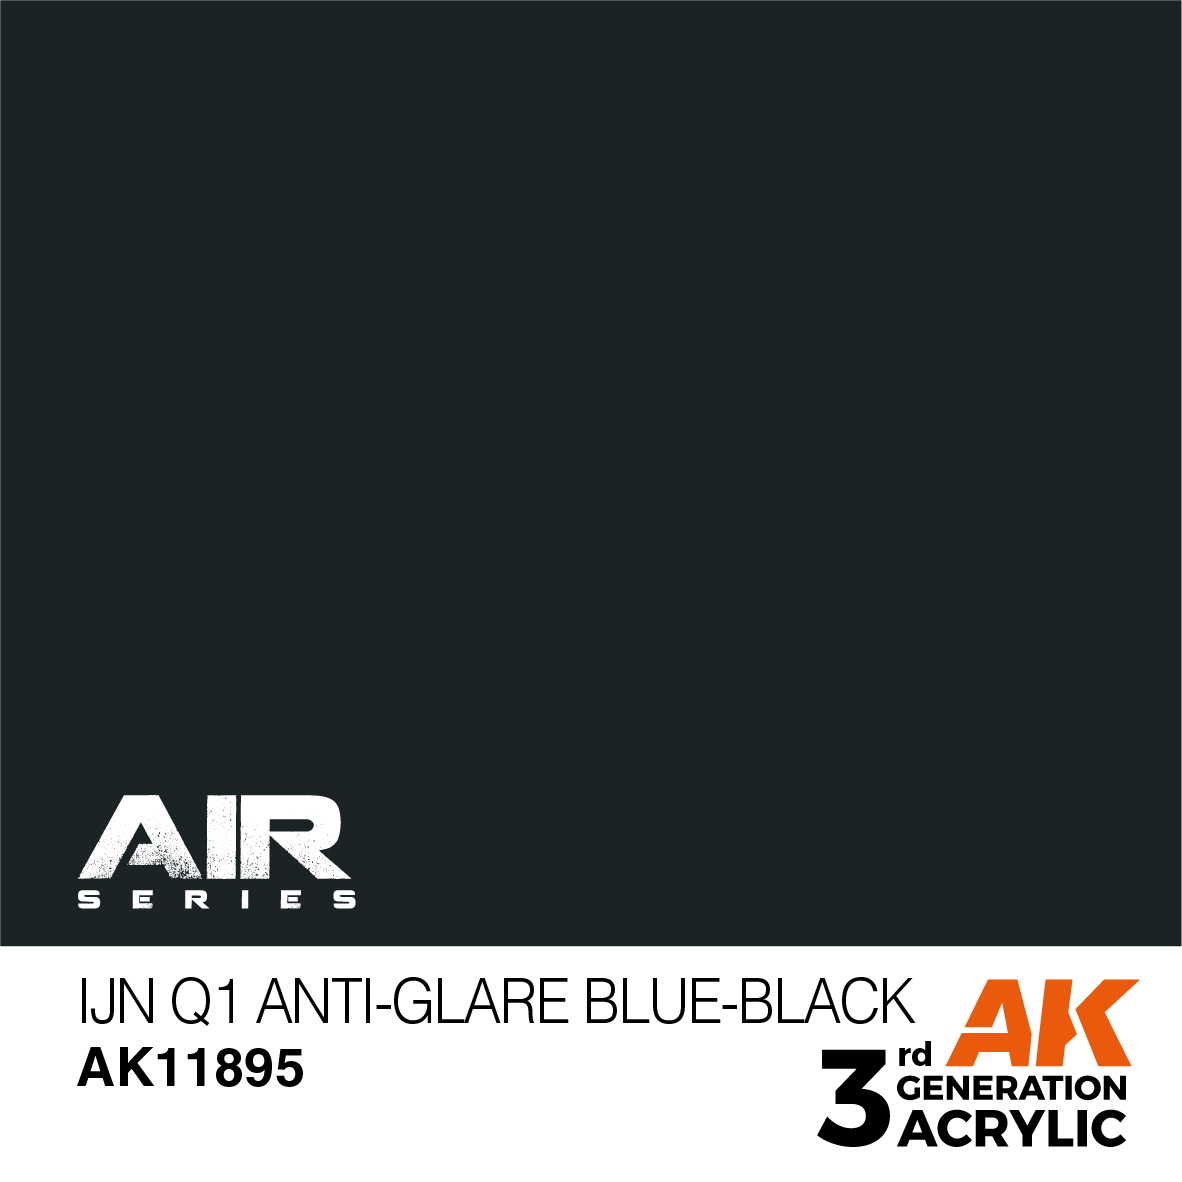 IJN Q1 Anti-Glare Blue-Black – AIR